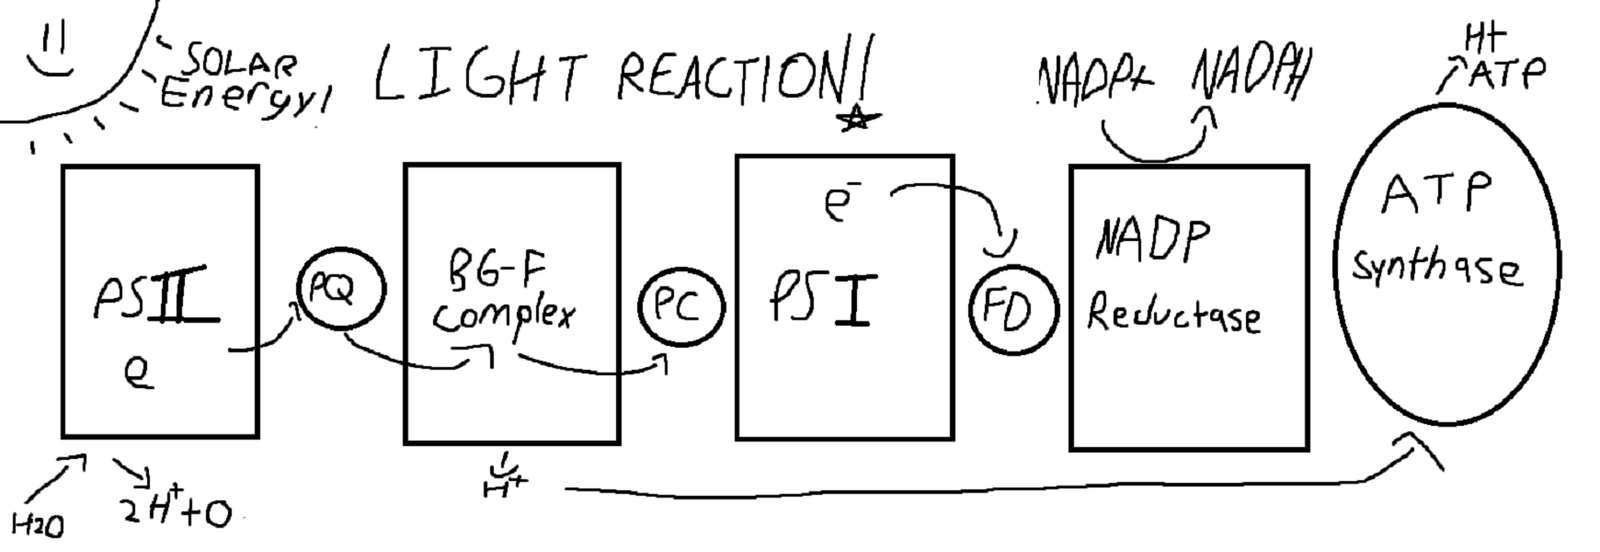 Light Reaction online puzzle